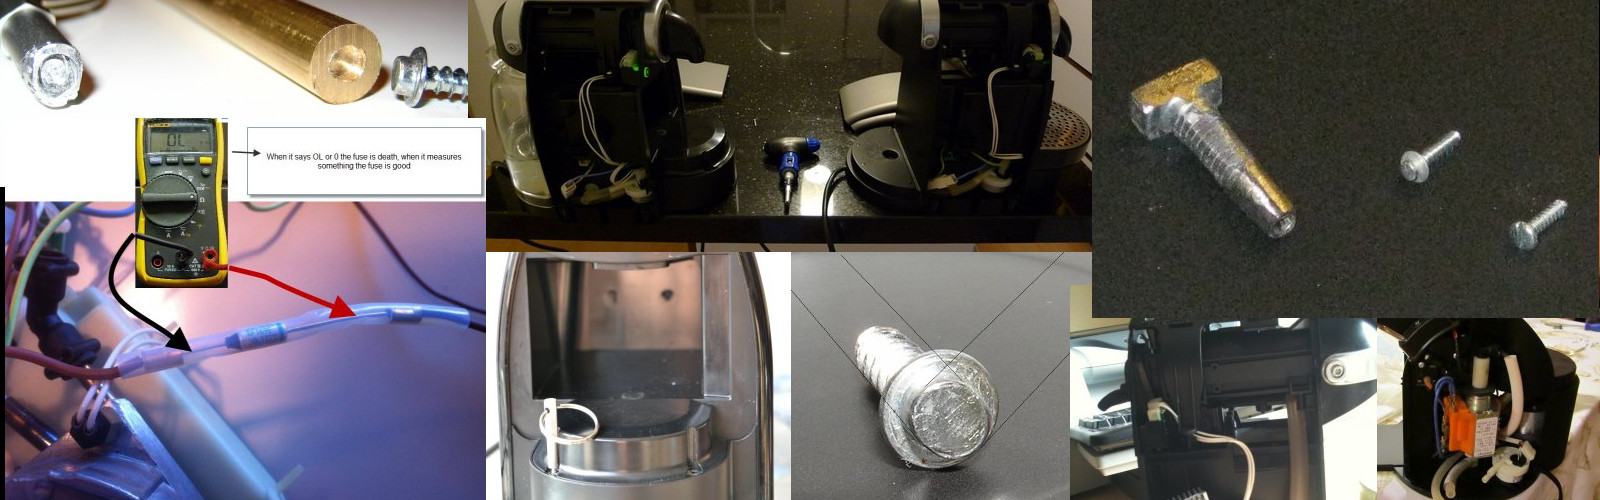 For Jura Nespresso Coffee Machine Repair Screwdriver Tool Kit Oval head  Torx bit